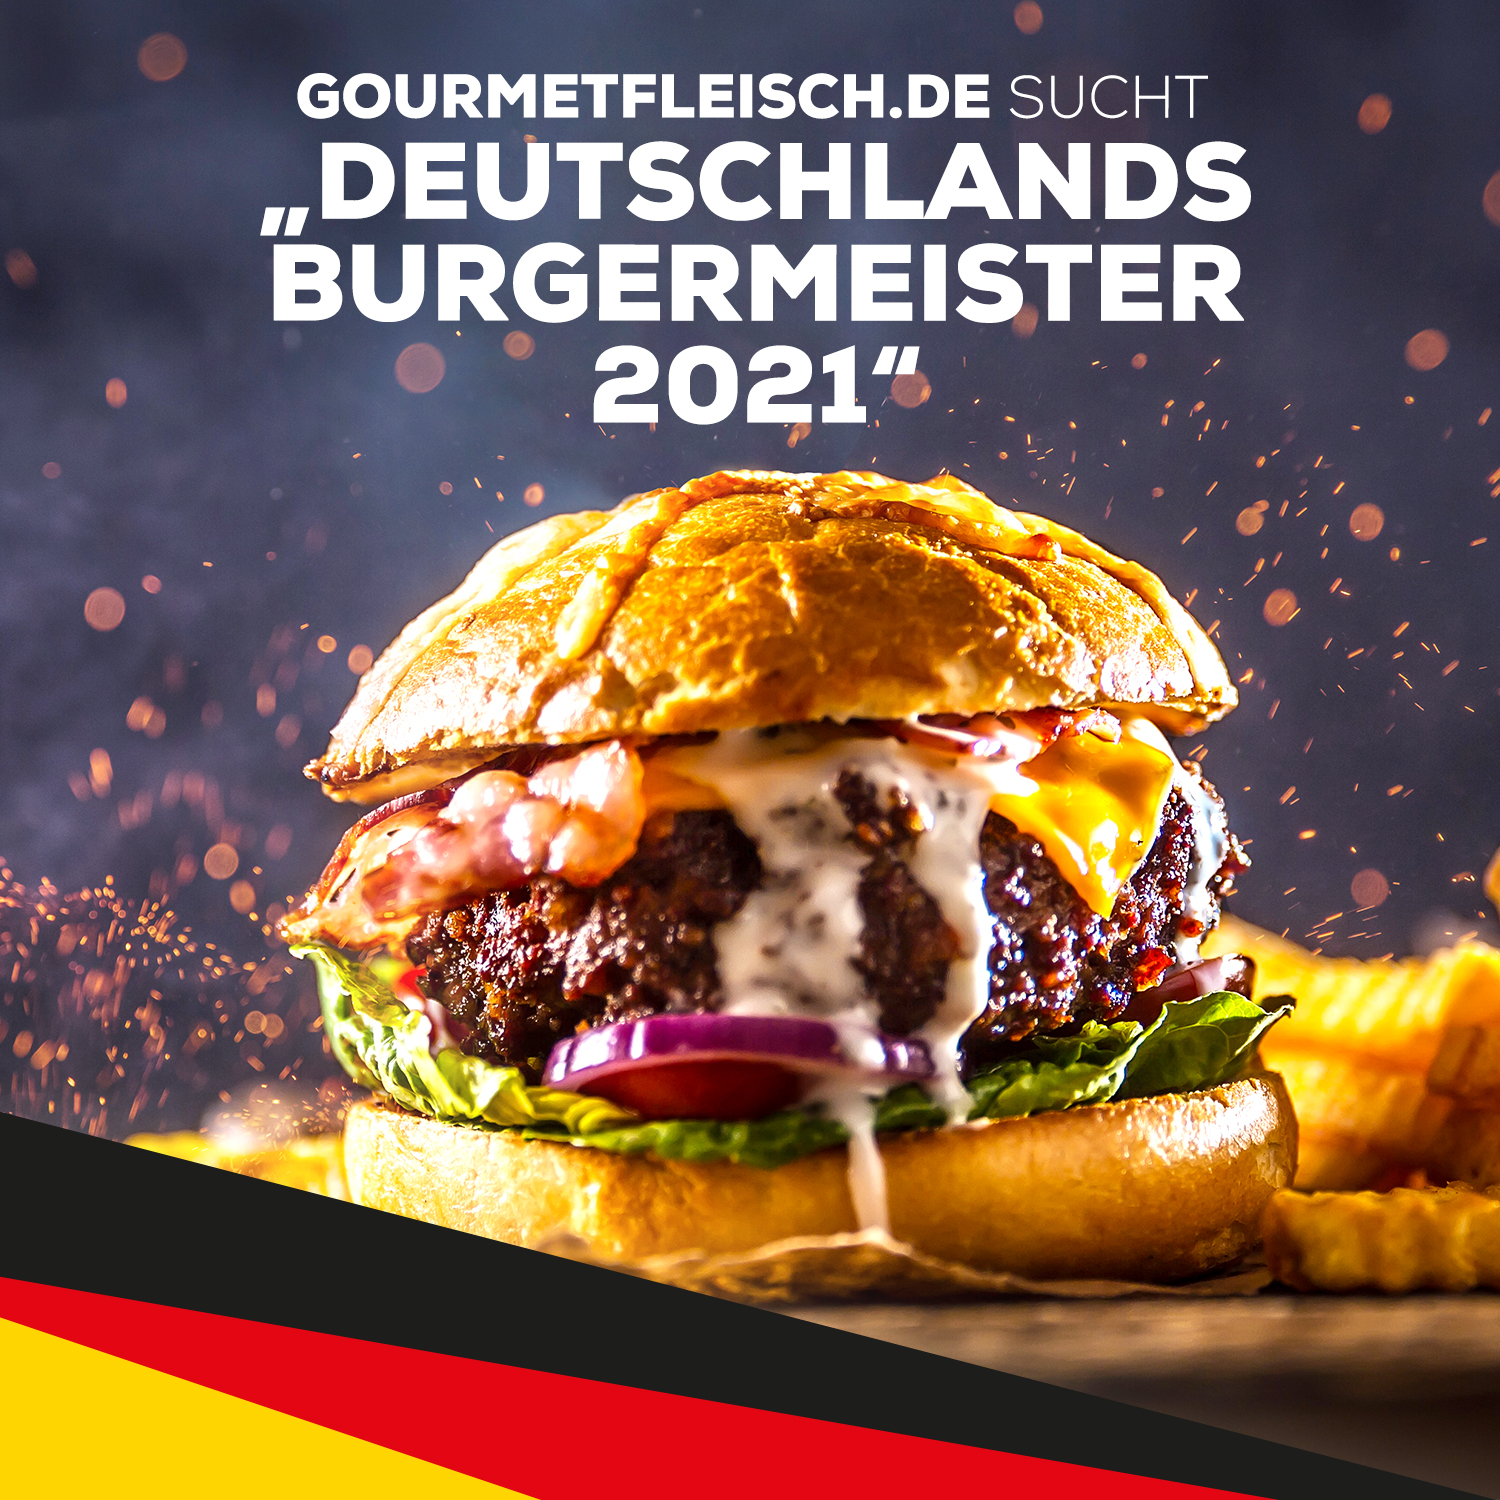 Gourmetfleisch.de sucht Deutschlands Burgermeister 2021.jpg